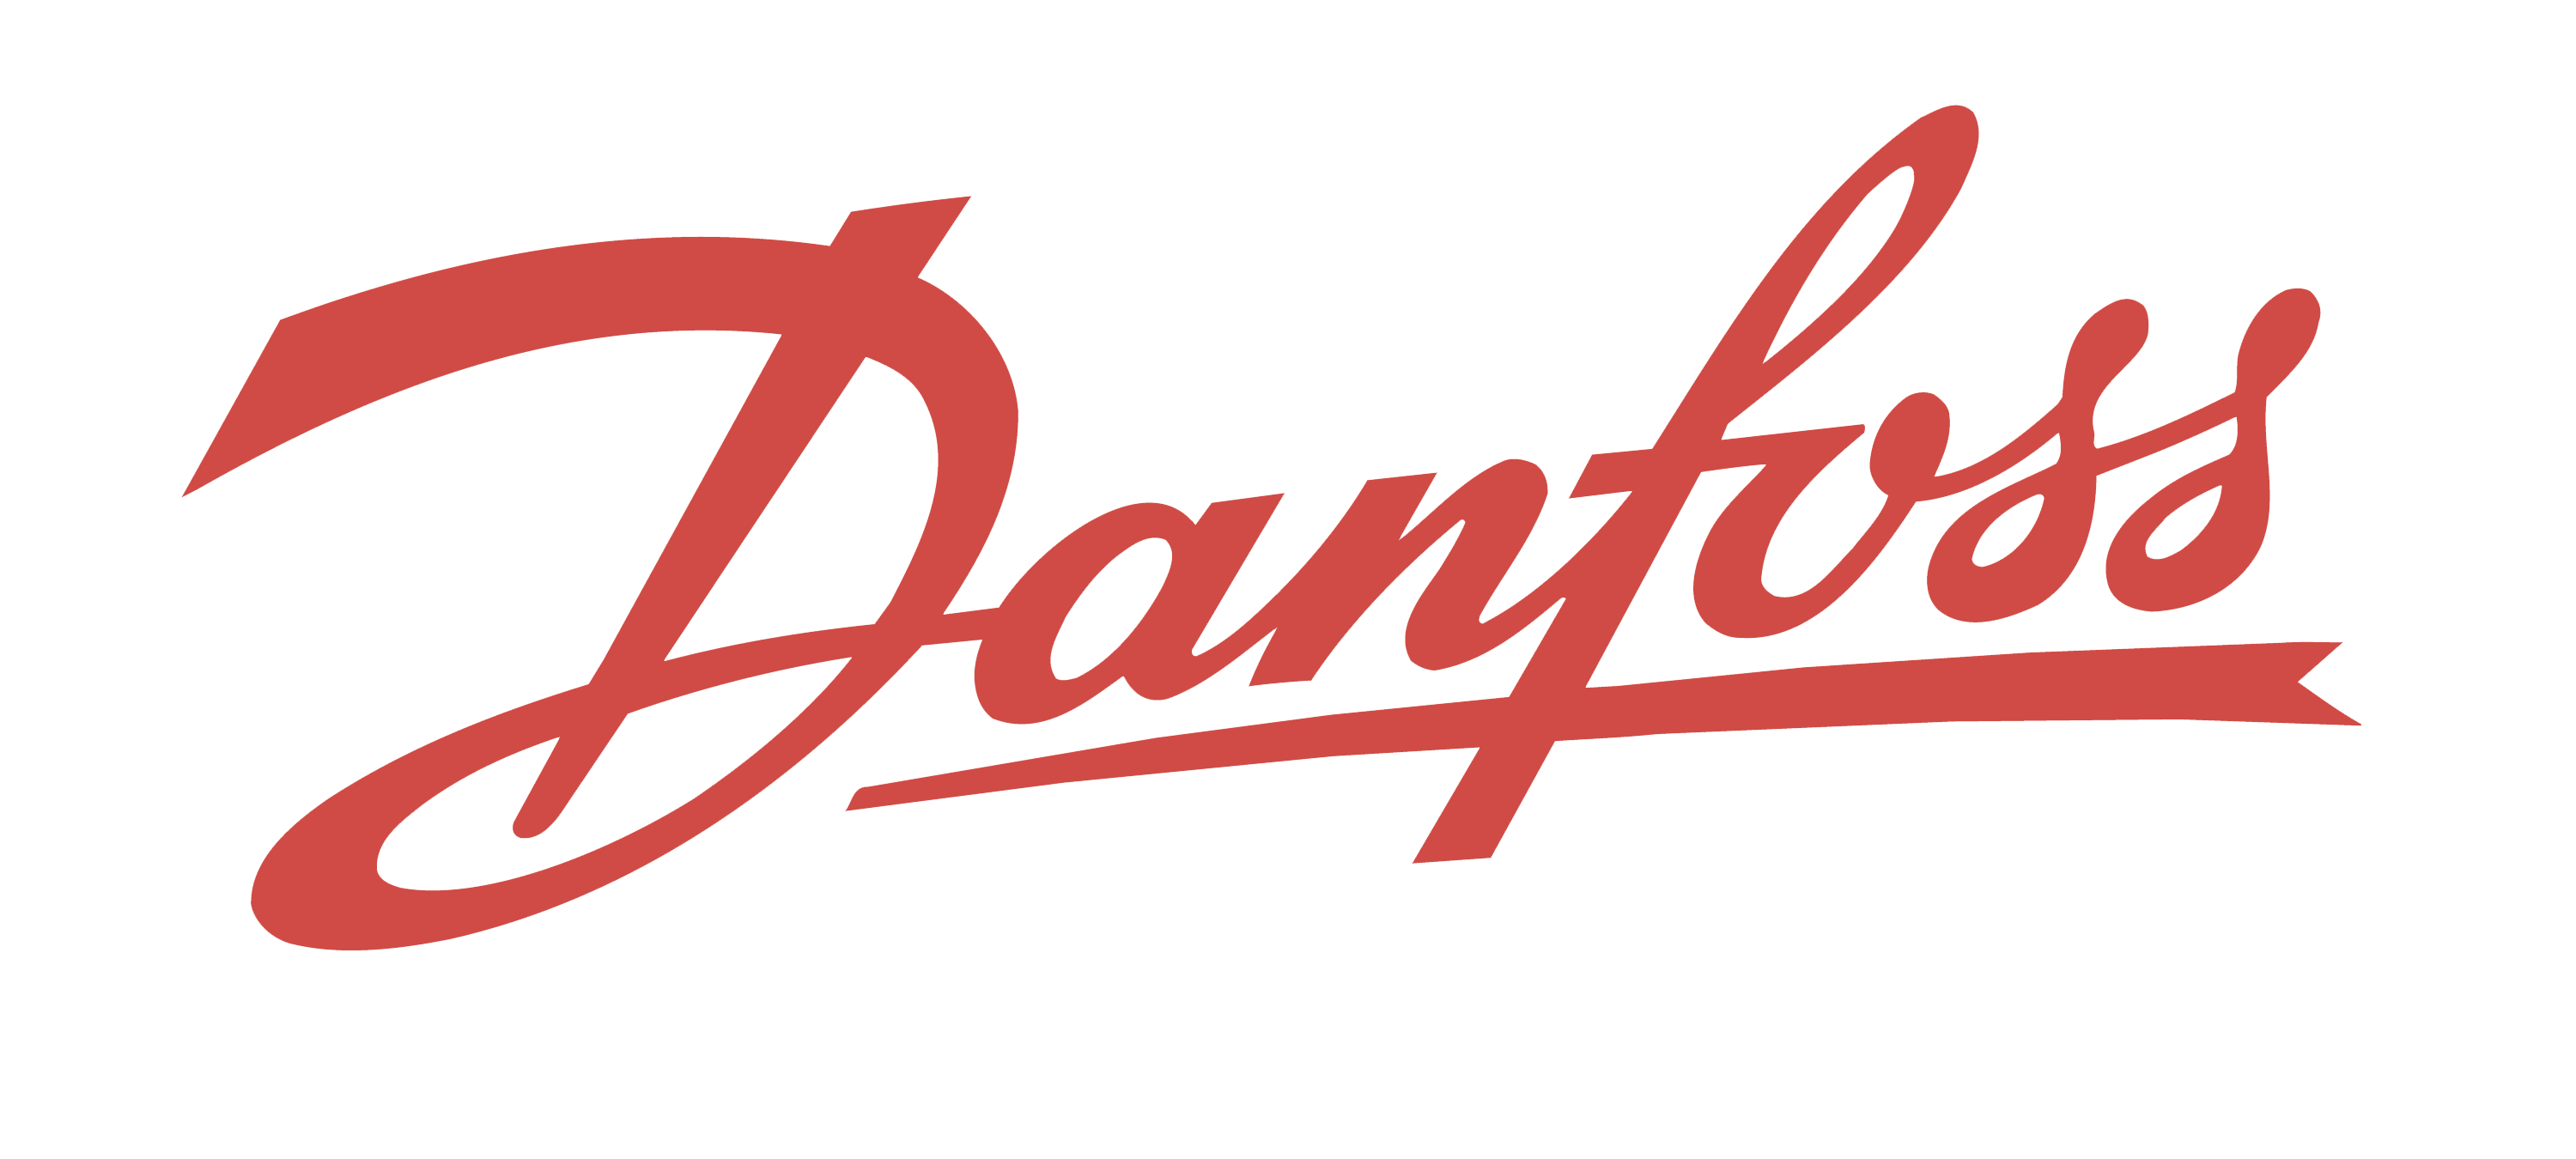 Danfoss - programovanie - niekoľko úspešných projektov - hlavne Excel a Access databázy. Množstvo školení v týchto programoch.